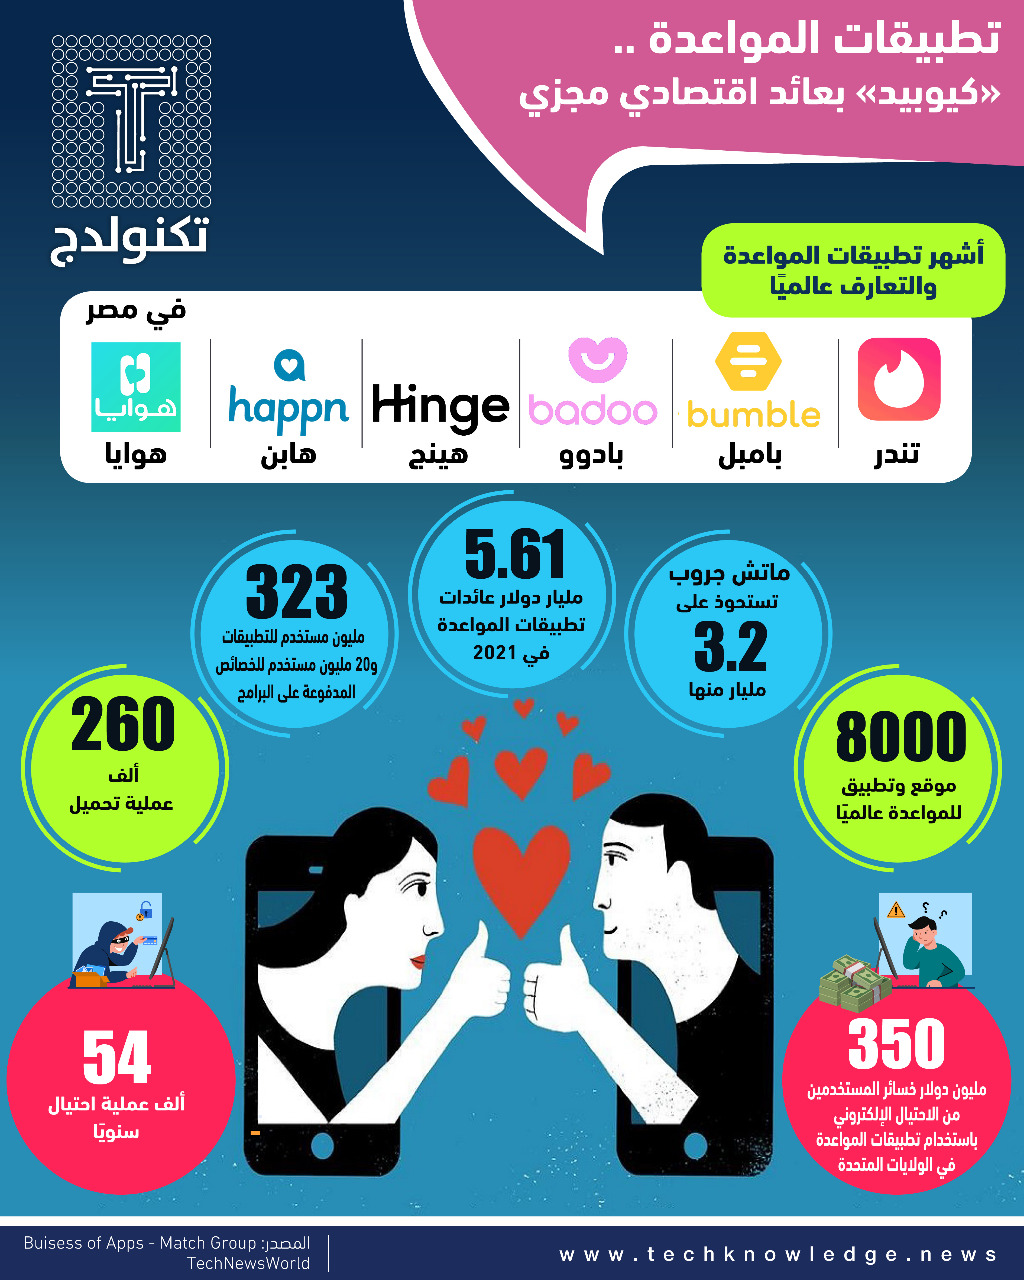 اكتشف أحدث تطبيقات التعارف المفضلة في الإمارات اليوم - ميزات ووظائف تطبيق OkCupid